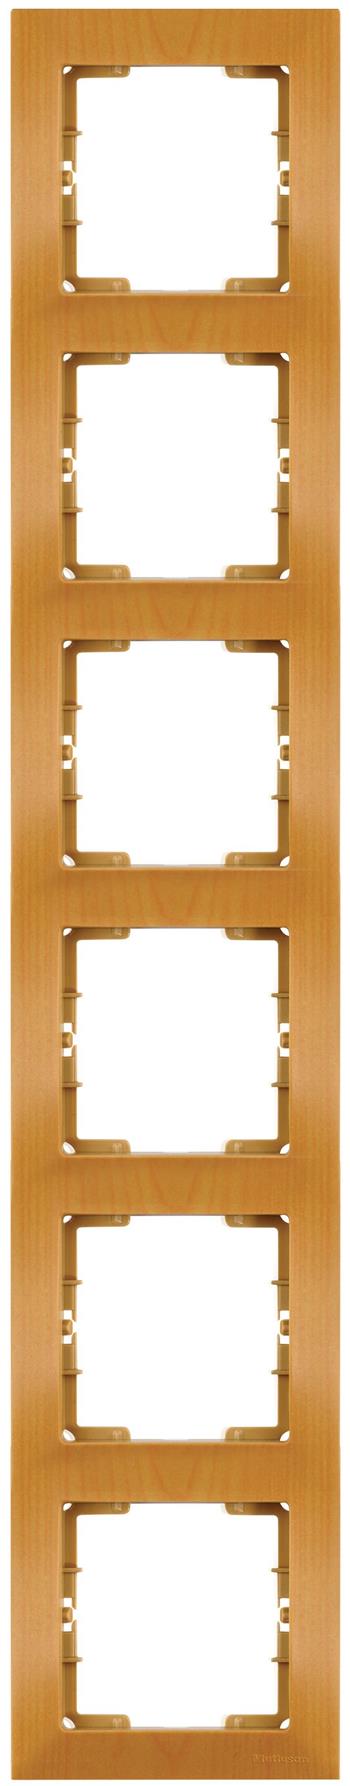 6 fach Rahmen vertikal Eiche (CANDELA Holz Optik)